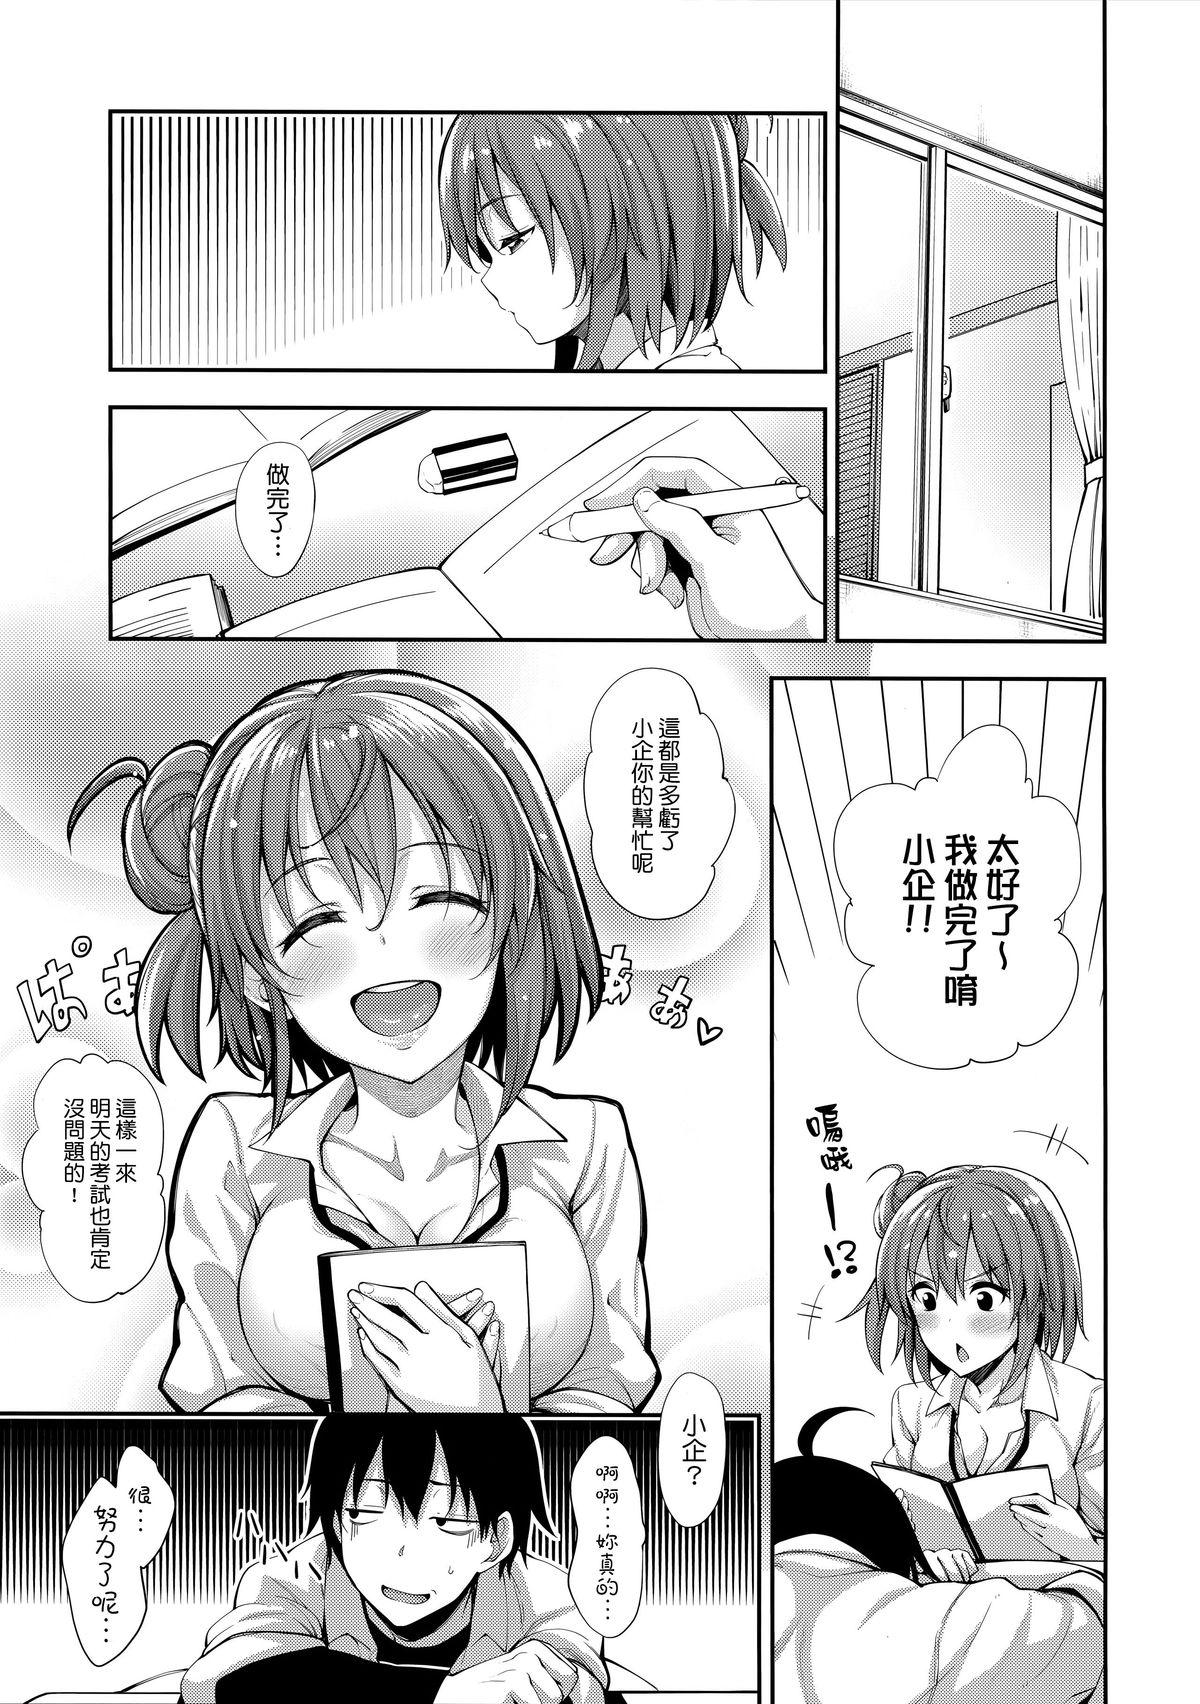 Butt Sex LOVE STORY #03 - Yahari ore no seishun love come wa machigatteiru Amature Sex - Page 5